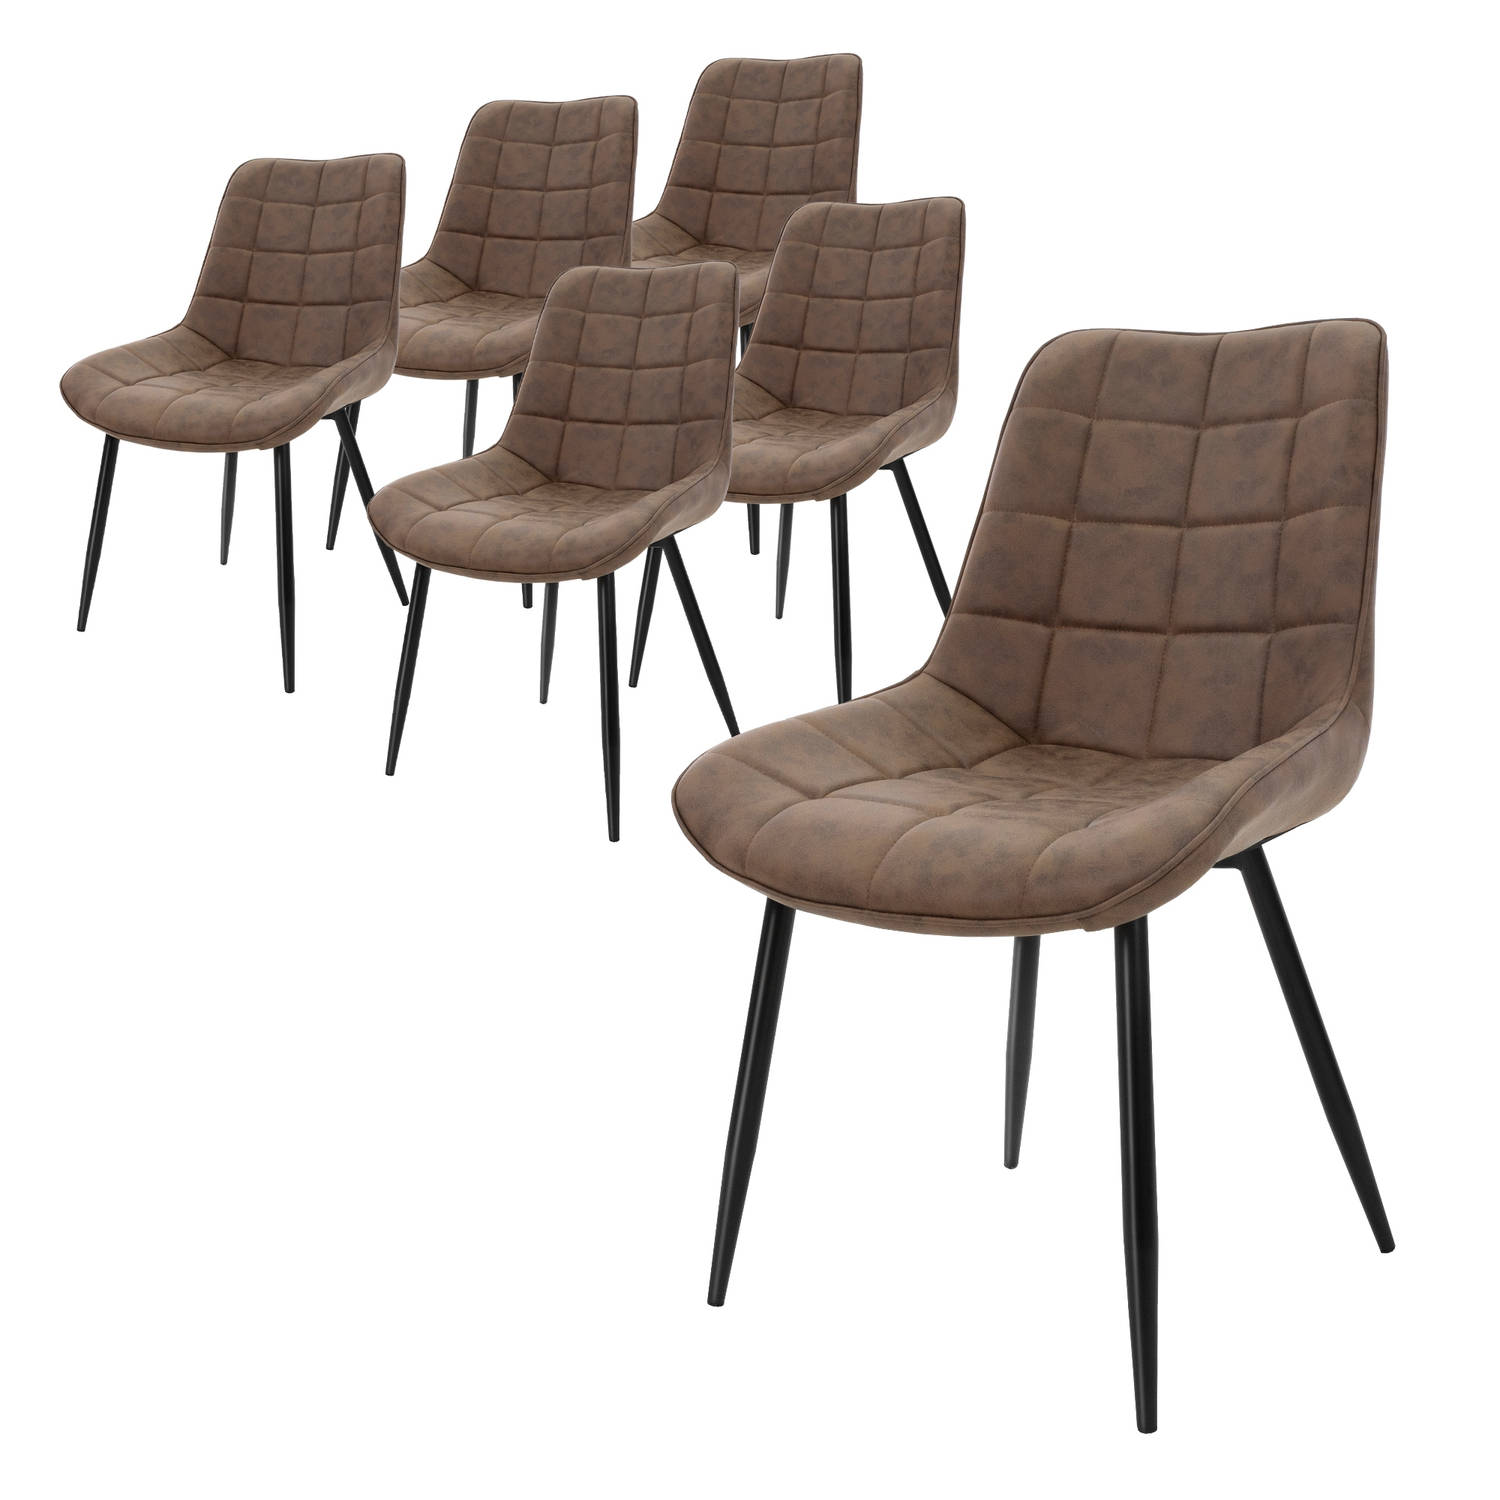 ML-Design Set van 6 eetkamerstoelen met rugleuning, bruin, keukenstoel met kunstleren bekleding, gestoffeerde stoel met metalen poten, ergonomische eettafelstoel, woonkamerstoel ke